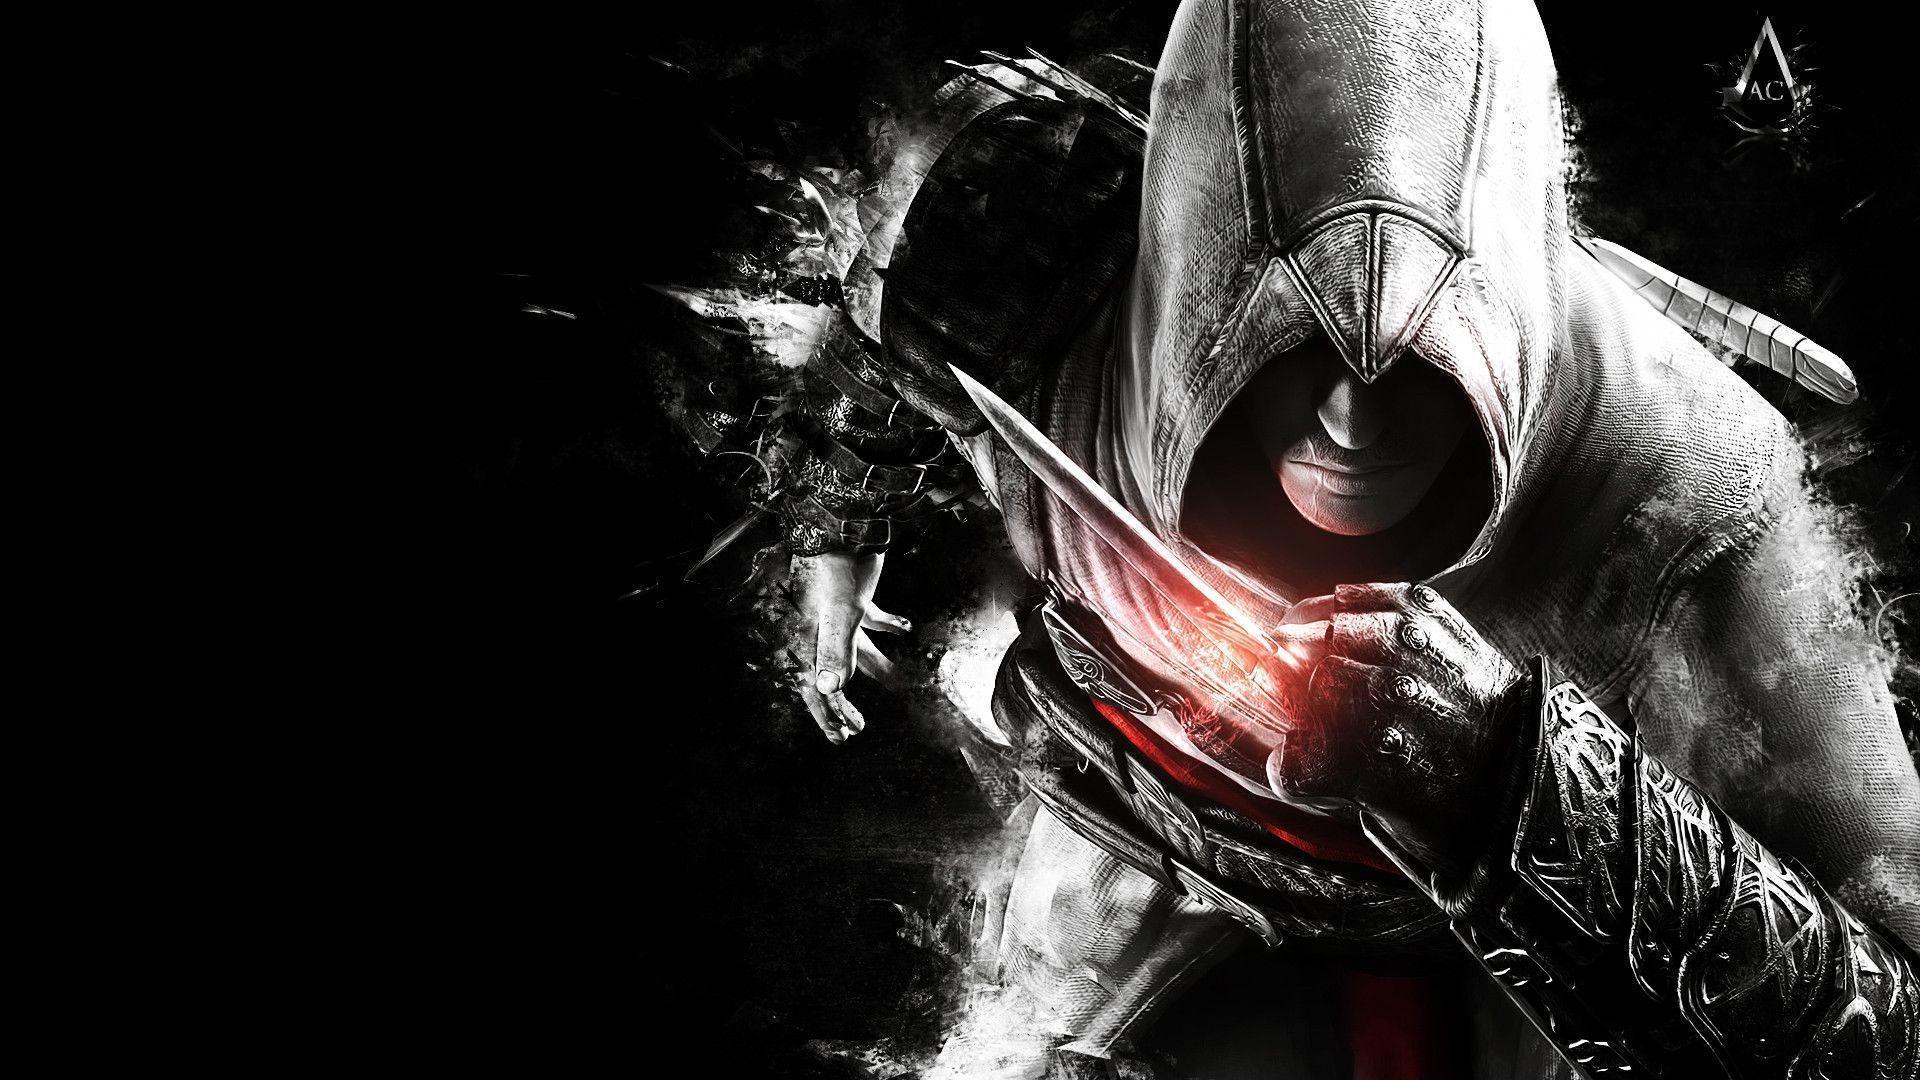 Assassin's Creed Wallpaper. Assassin's